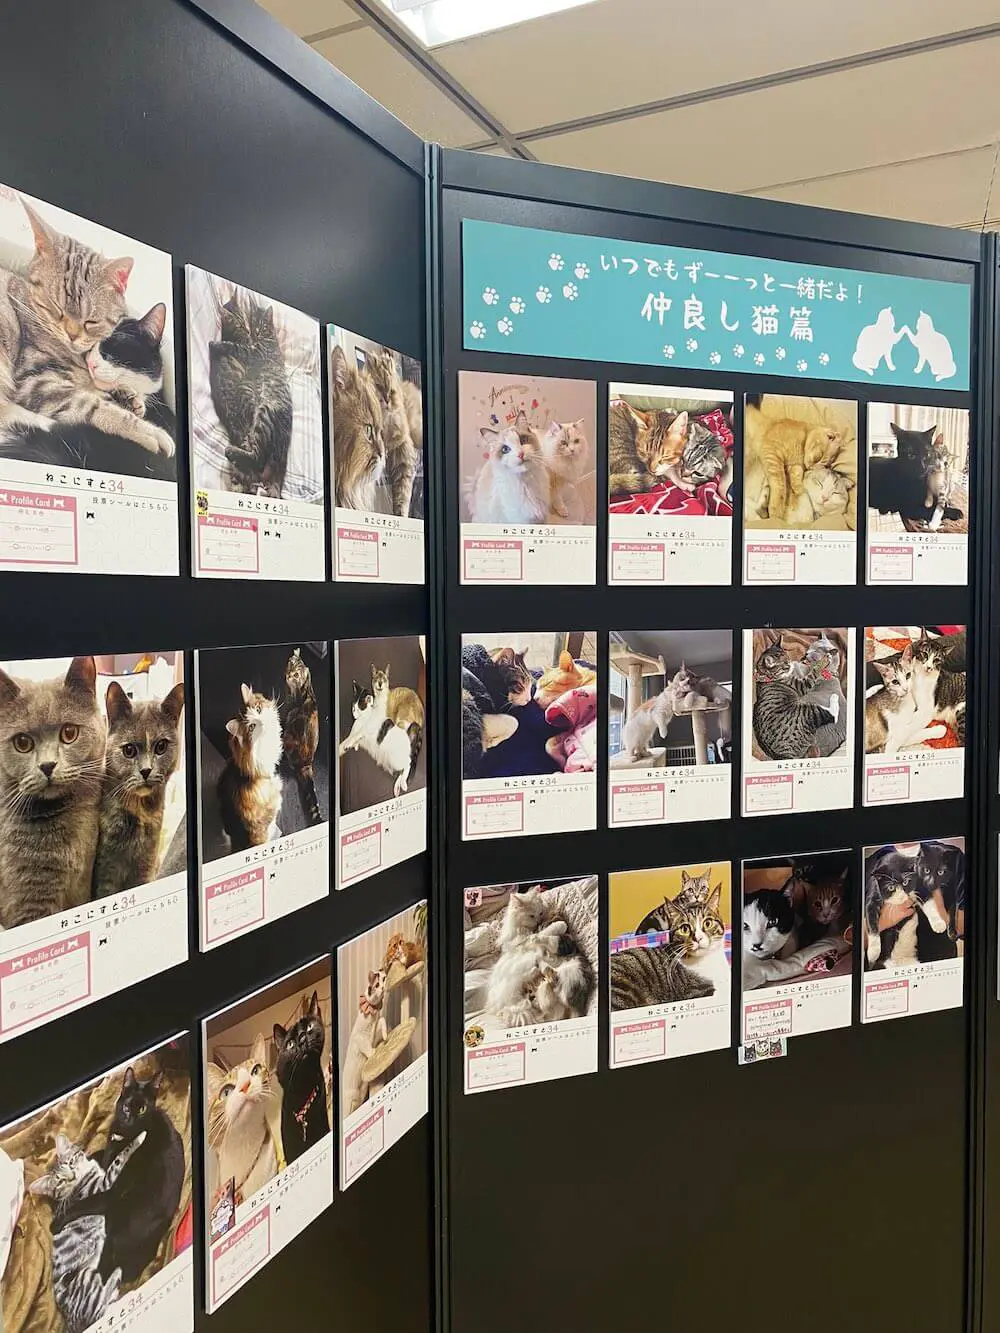 愛猫のオリジナル時計も作れるニャ 850枚のねこ写真を展示する ねこにすと 横浜で開催中 Cat Press